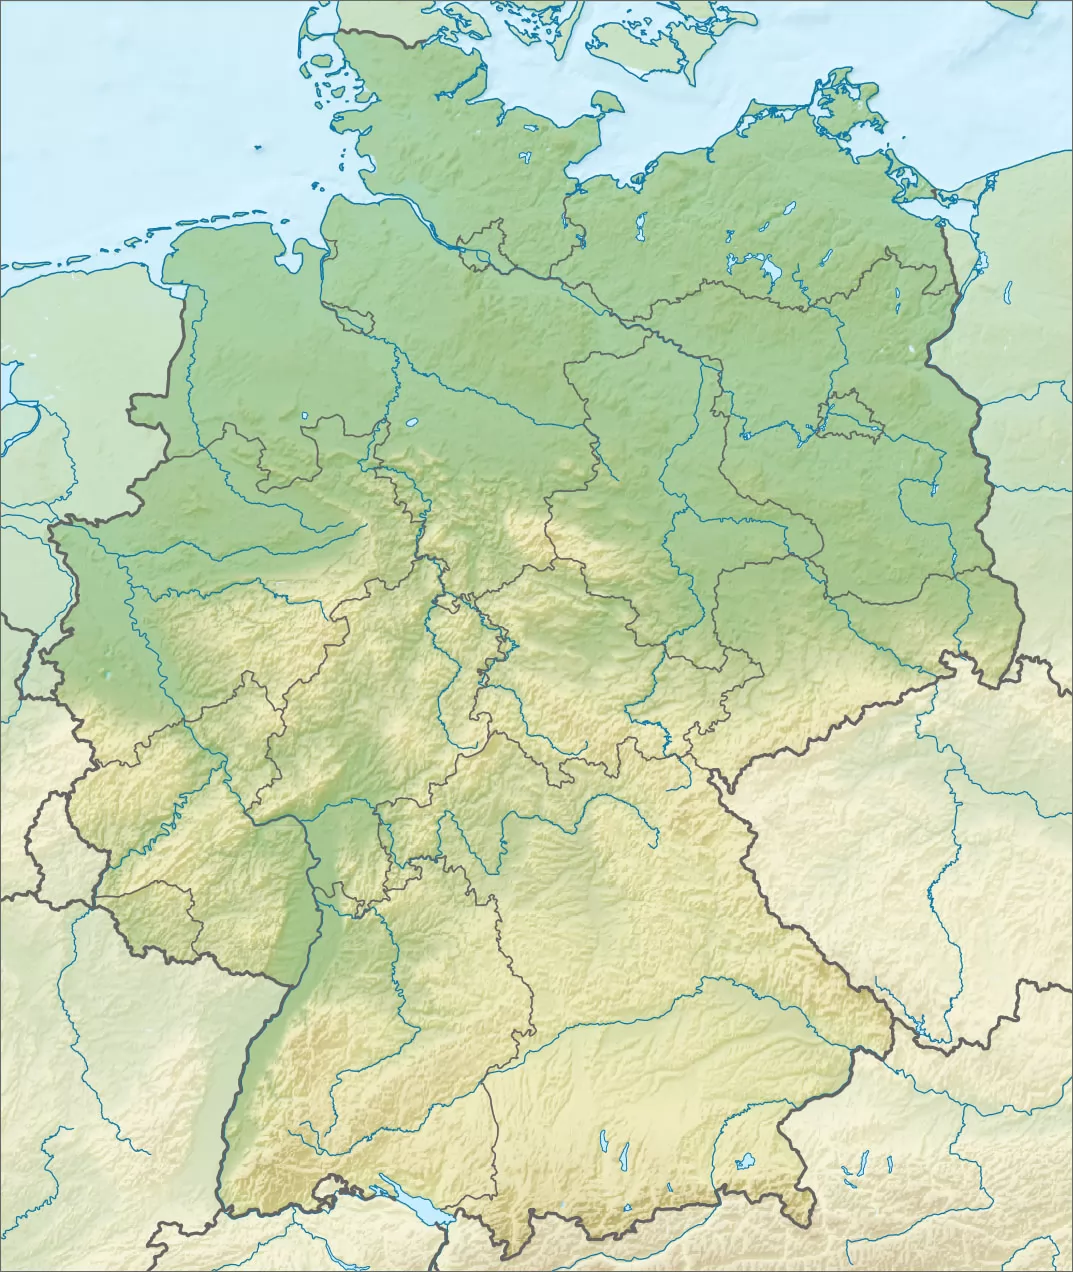 德国地图与联邦国家。平面向量 — 图库矢量图像© sanek13744 #140688512